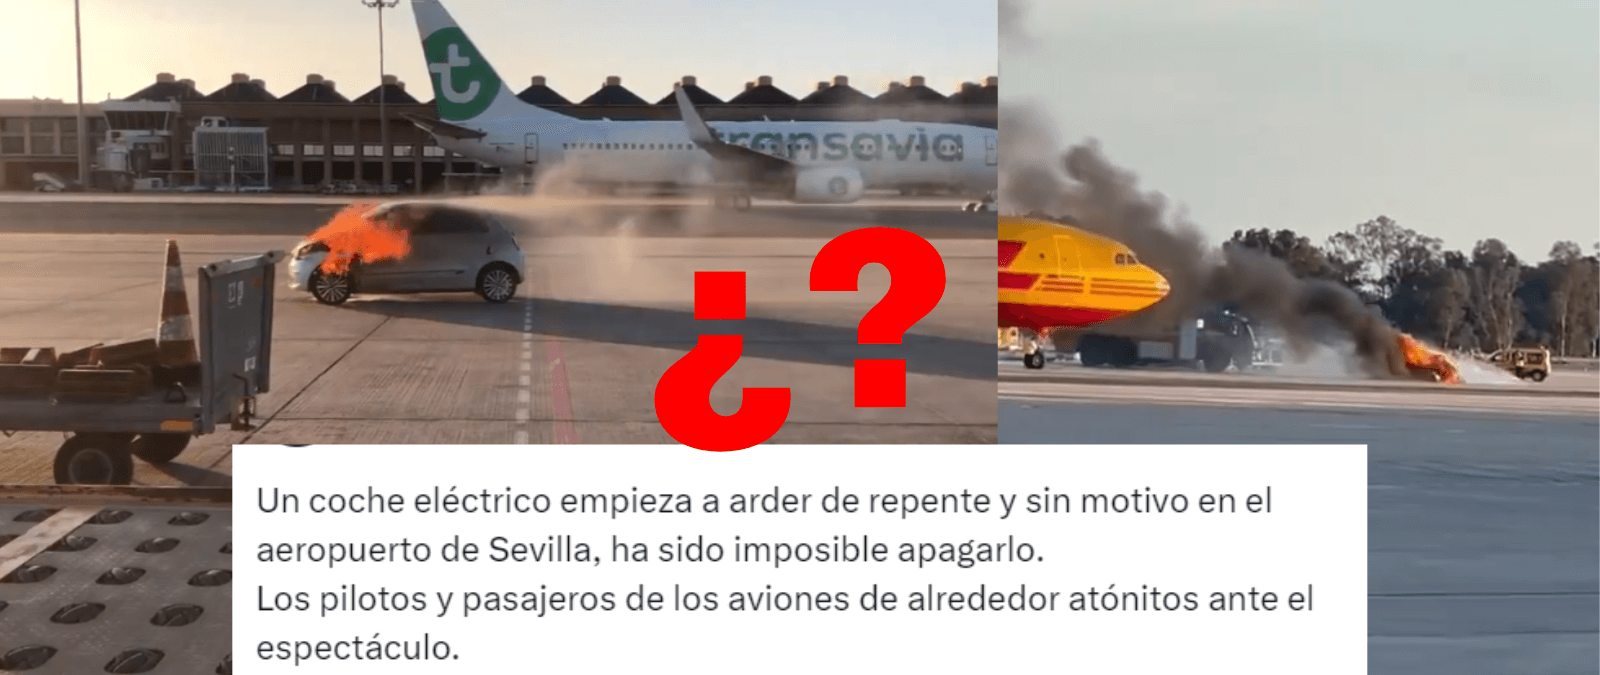 Qué sabemos del incendio de un coche eléctrico en el aeropuerto de Sevilla